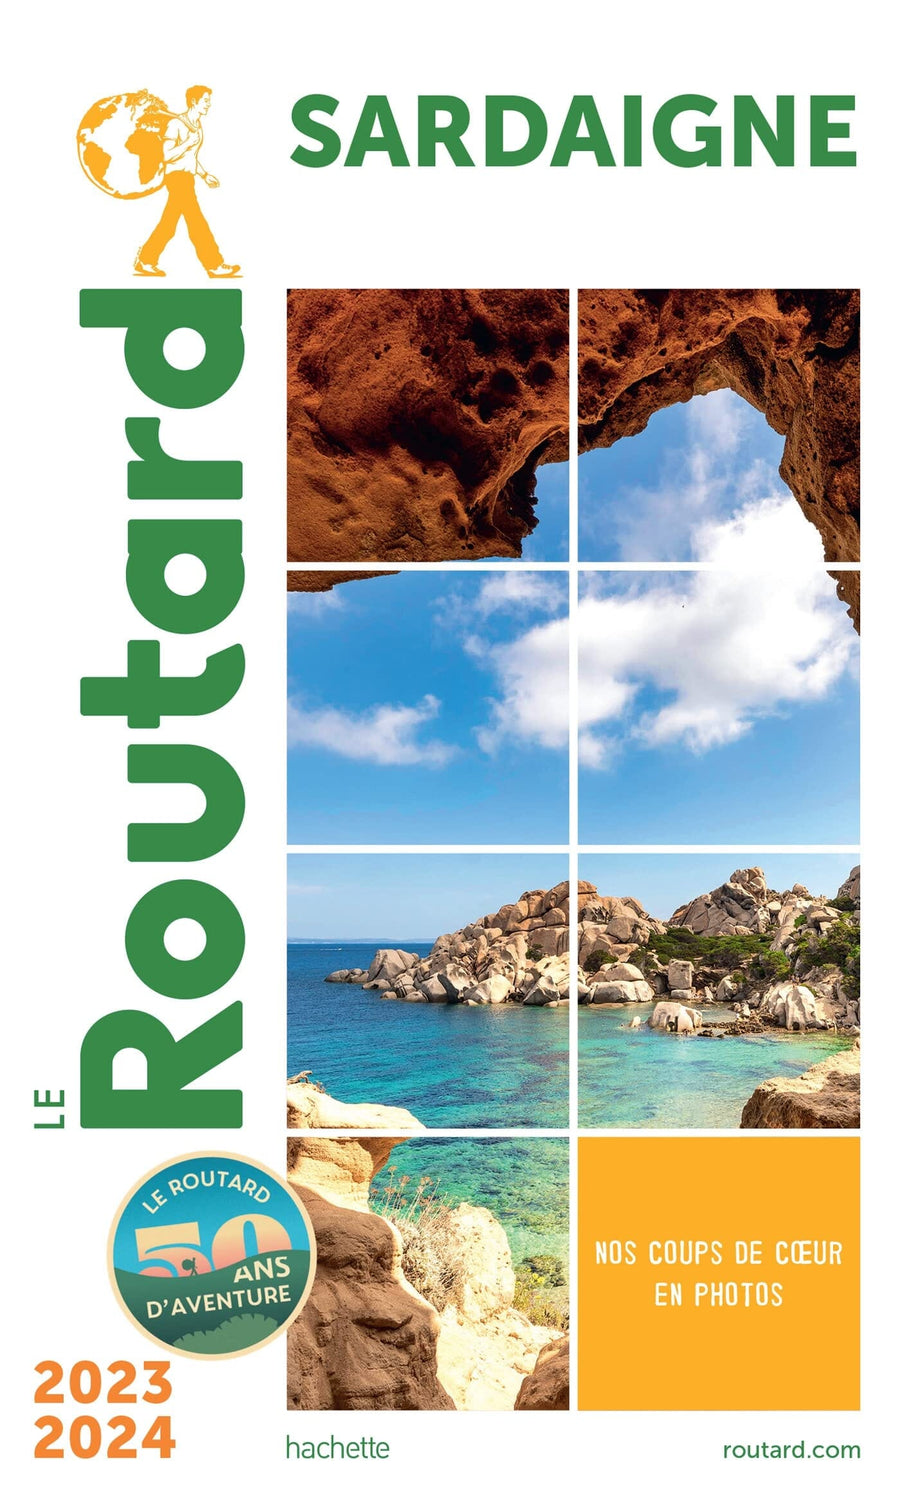 Guide du Routard - Sardaigne 2023/24 | Hachette guide de voyage Hachette 